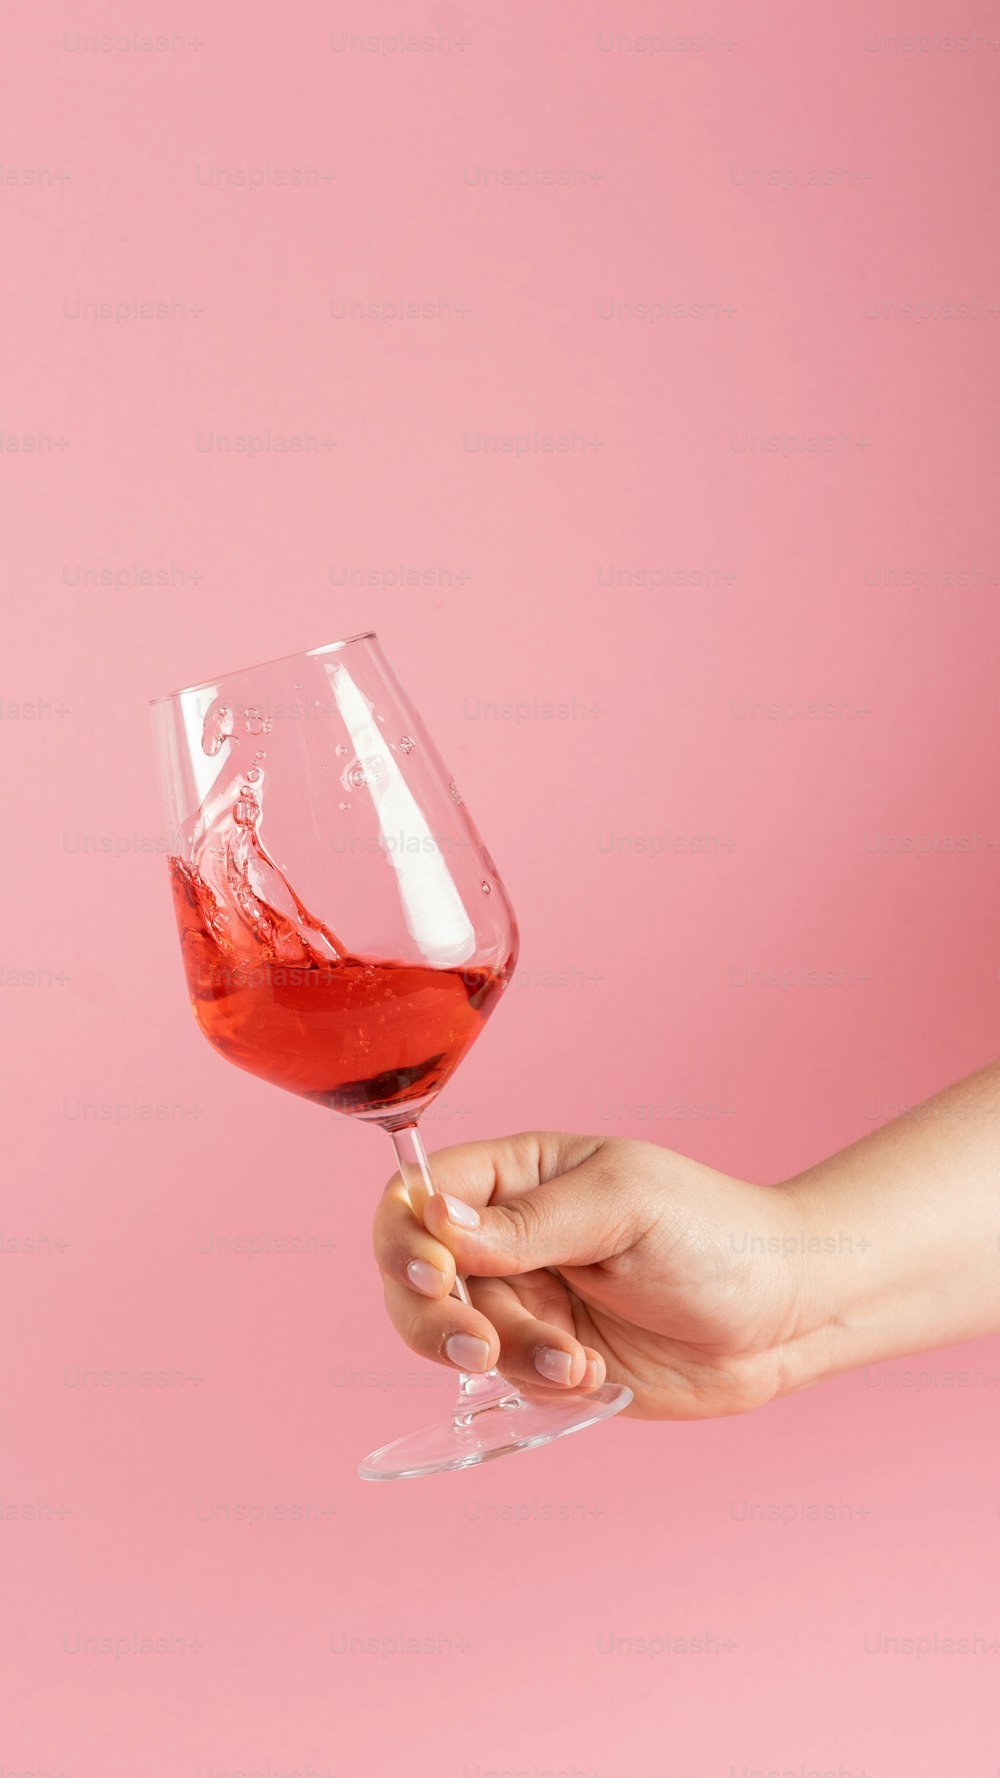 une personne tenant un verre de vin contenant du vin rouge